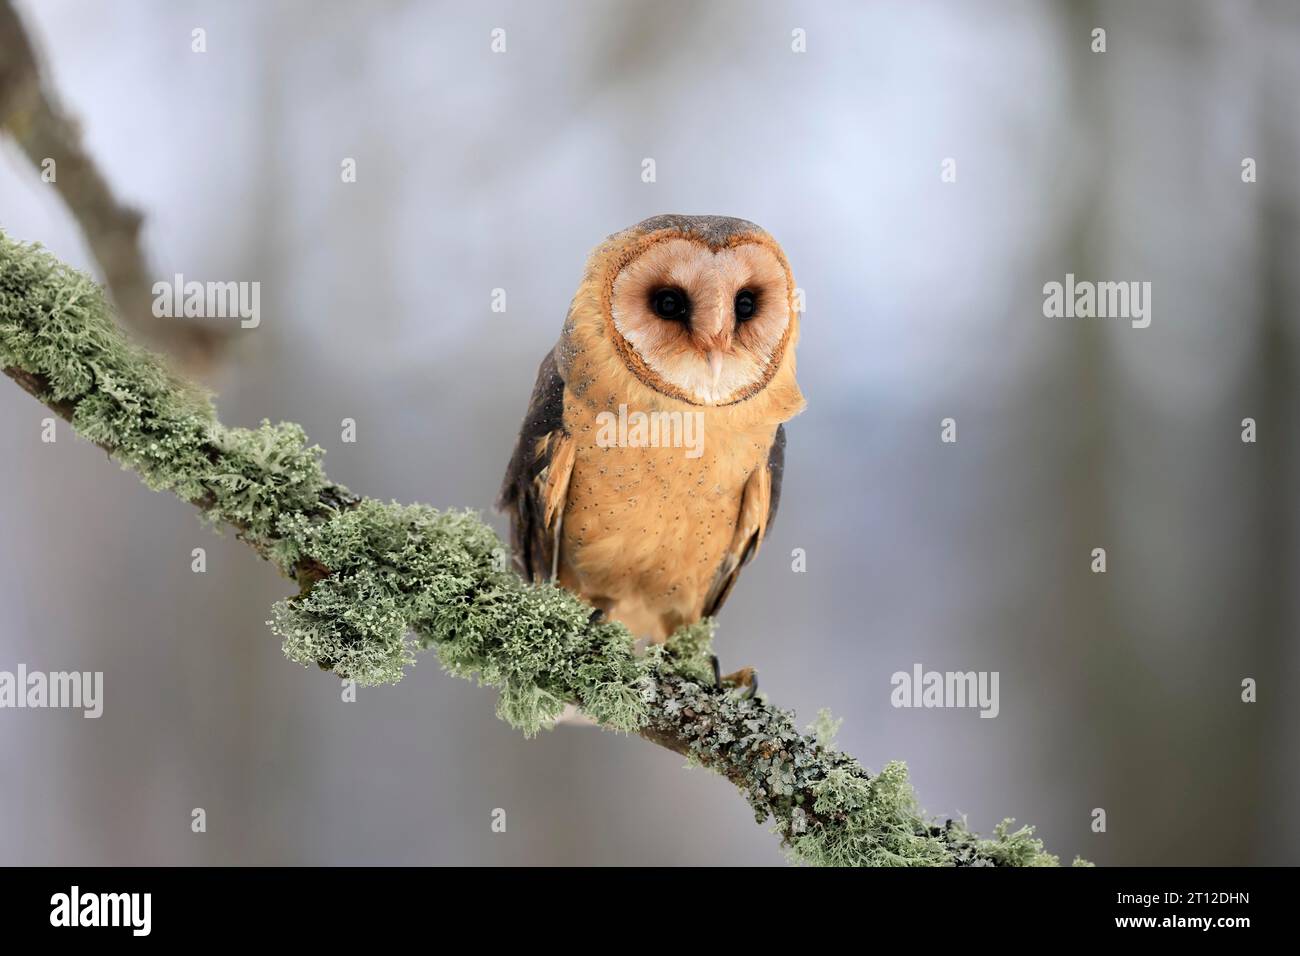 Central European barn owl (Tyto alba guttata), adult, perch, in winter, Sumava, Czech Republic Stock Photo